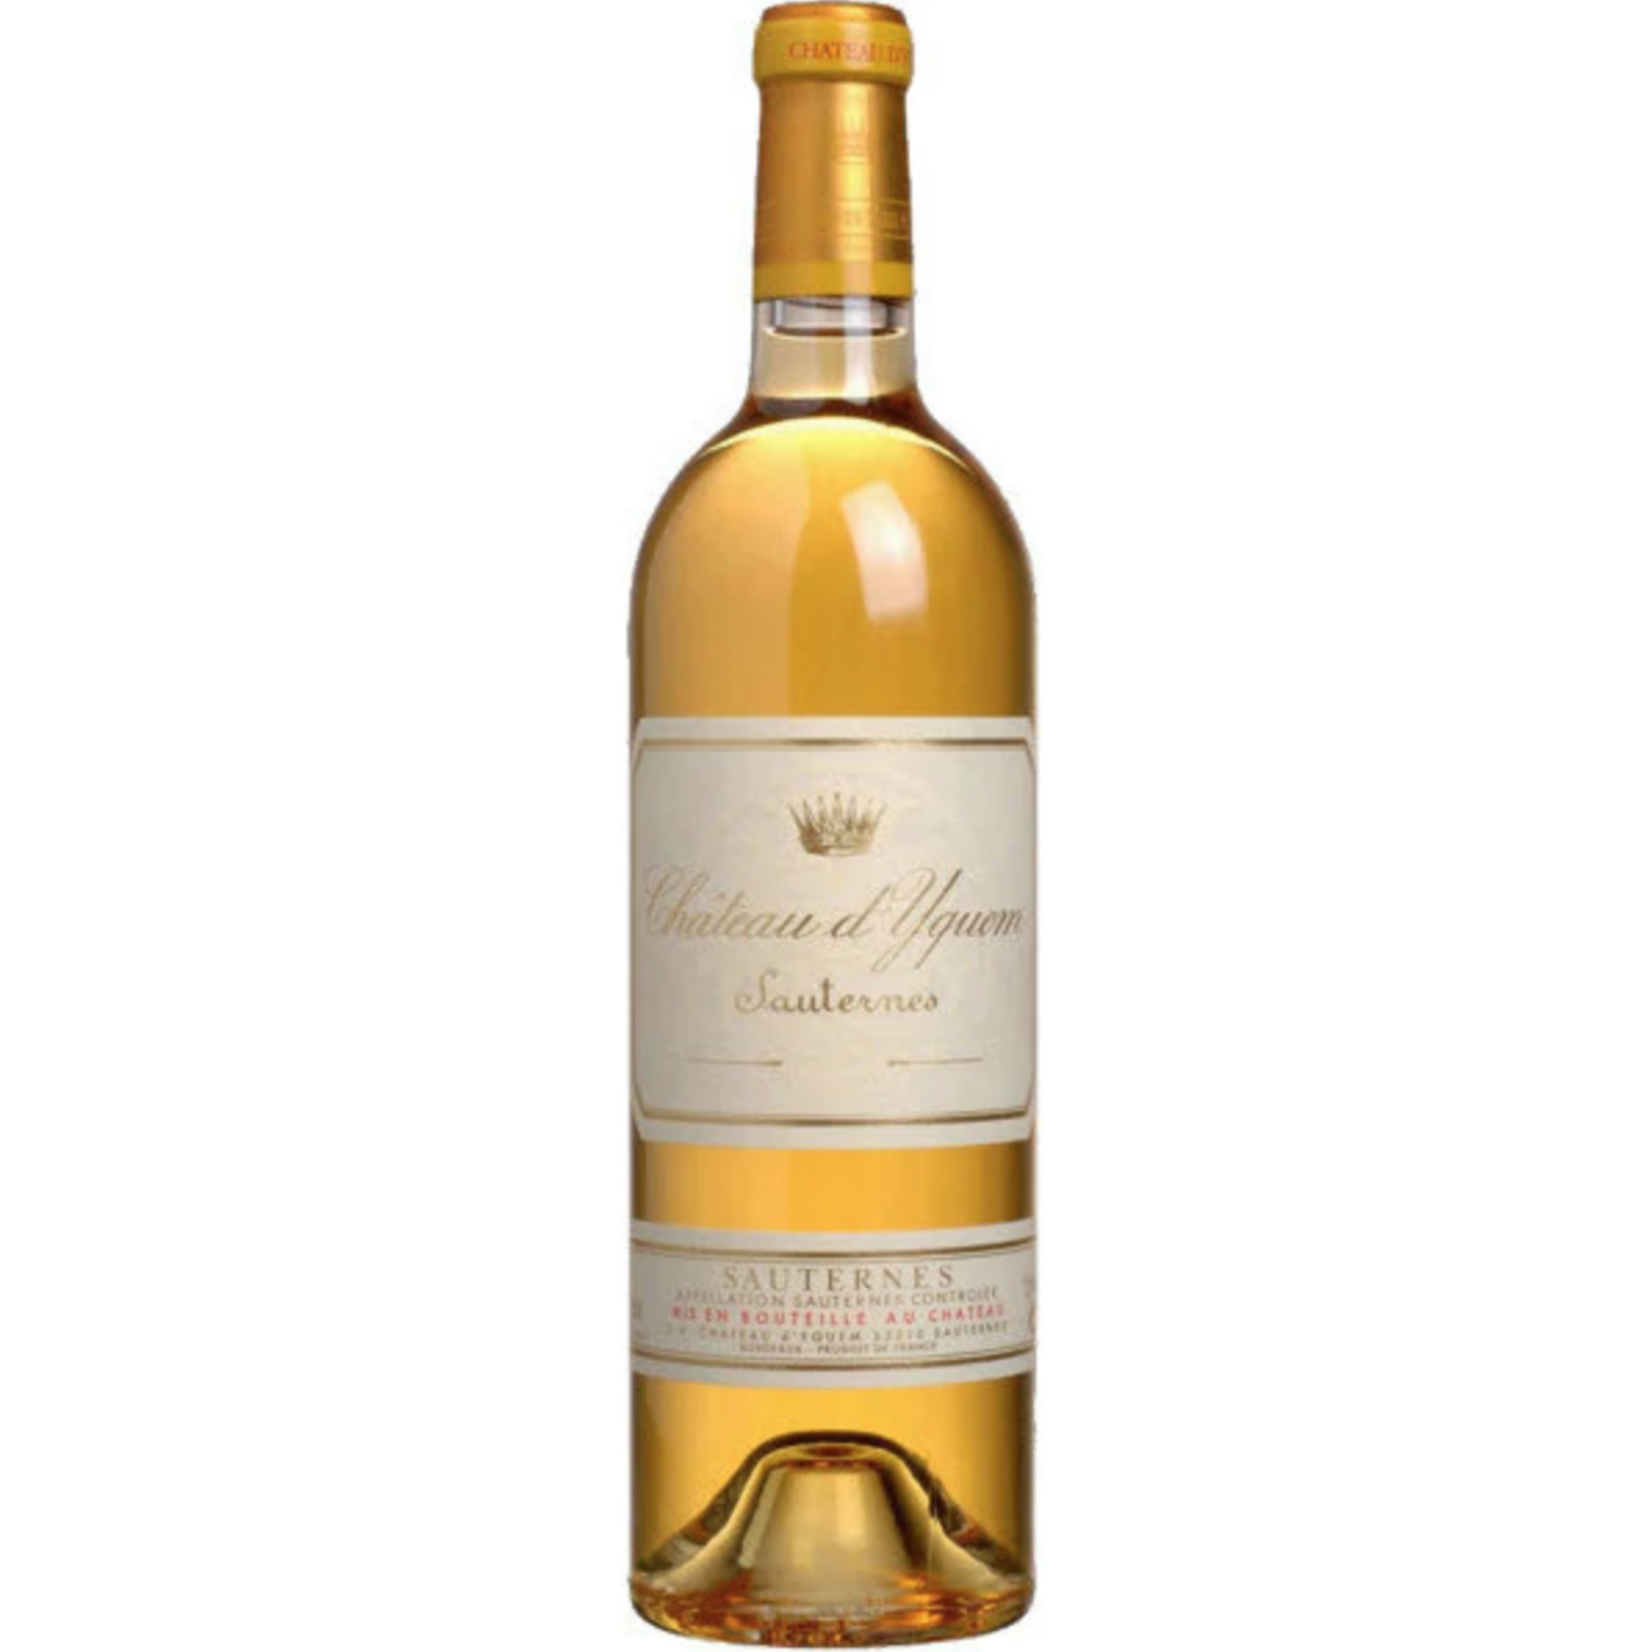 2015, 375ml Chateau d'Yquem, Semillon- Sauvignon Blanc Blend, Sauternes, Bordeaux, France, 14% Alc, CT